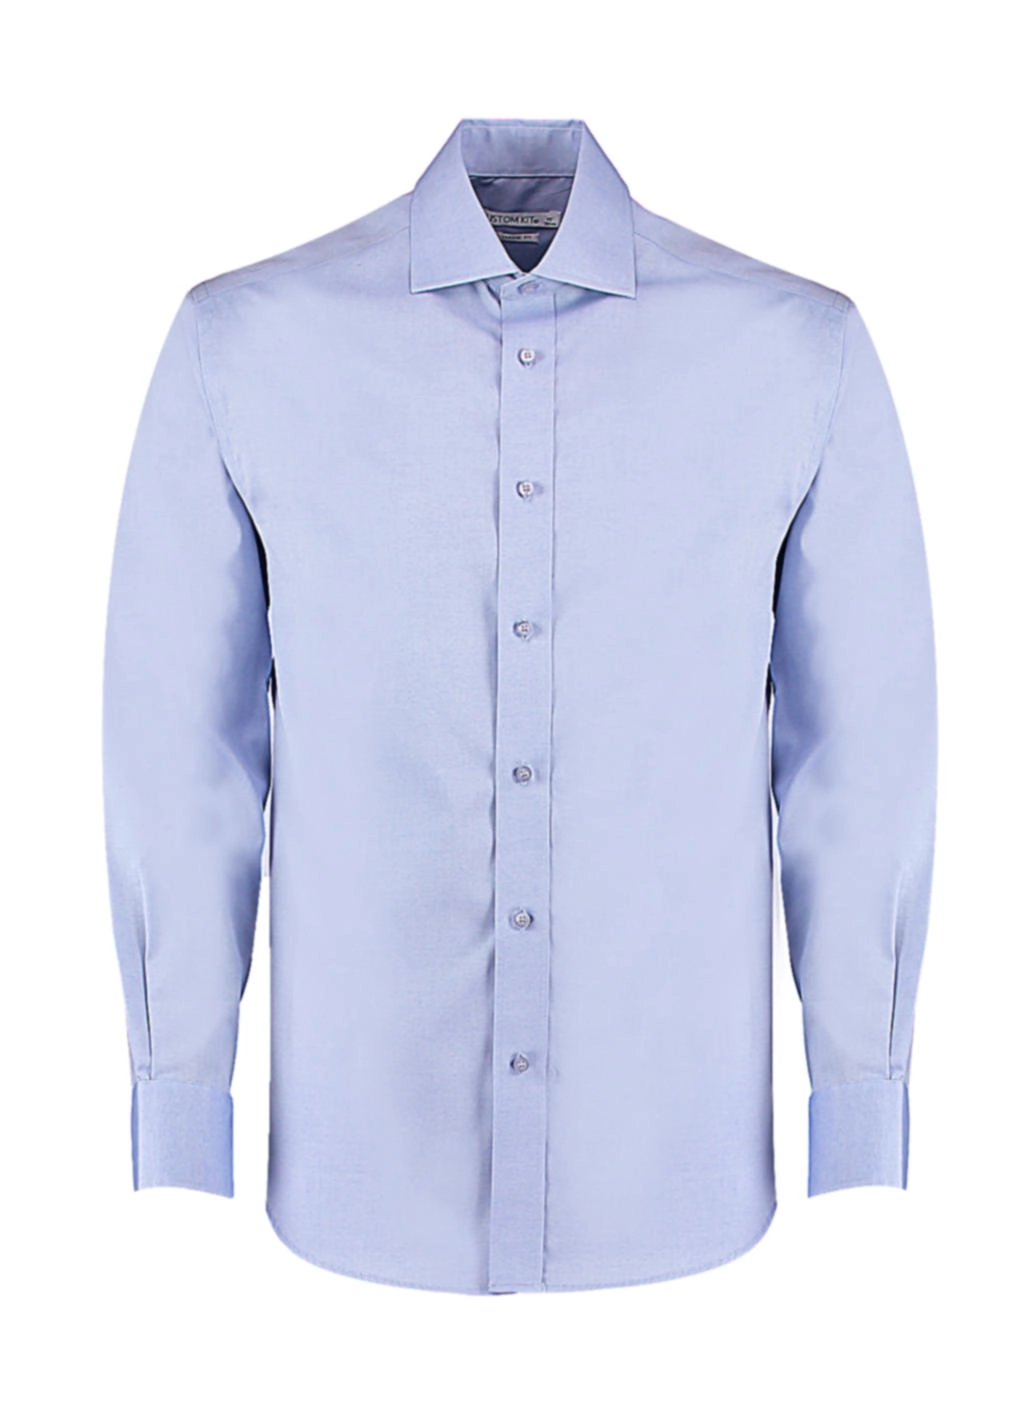 Classic Fit Premium Cutaway Oxford Shirt zum Besticken und Bedrucken in der Farbe Light Blue mit Ihren Logo, Schriftzug oder Motiv.